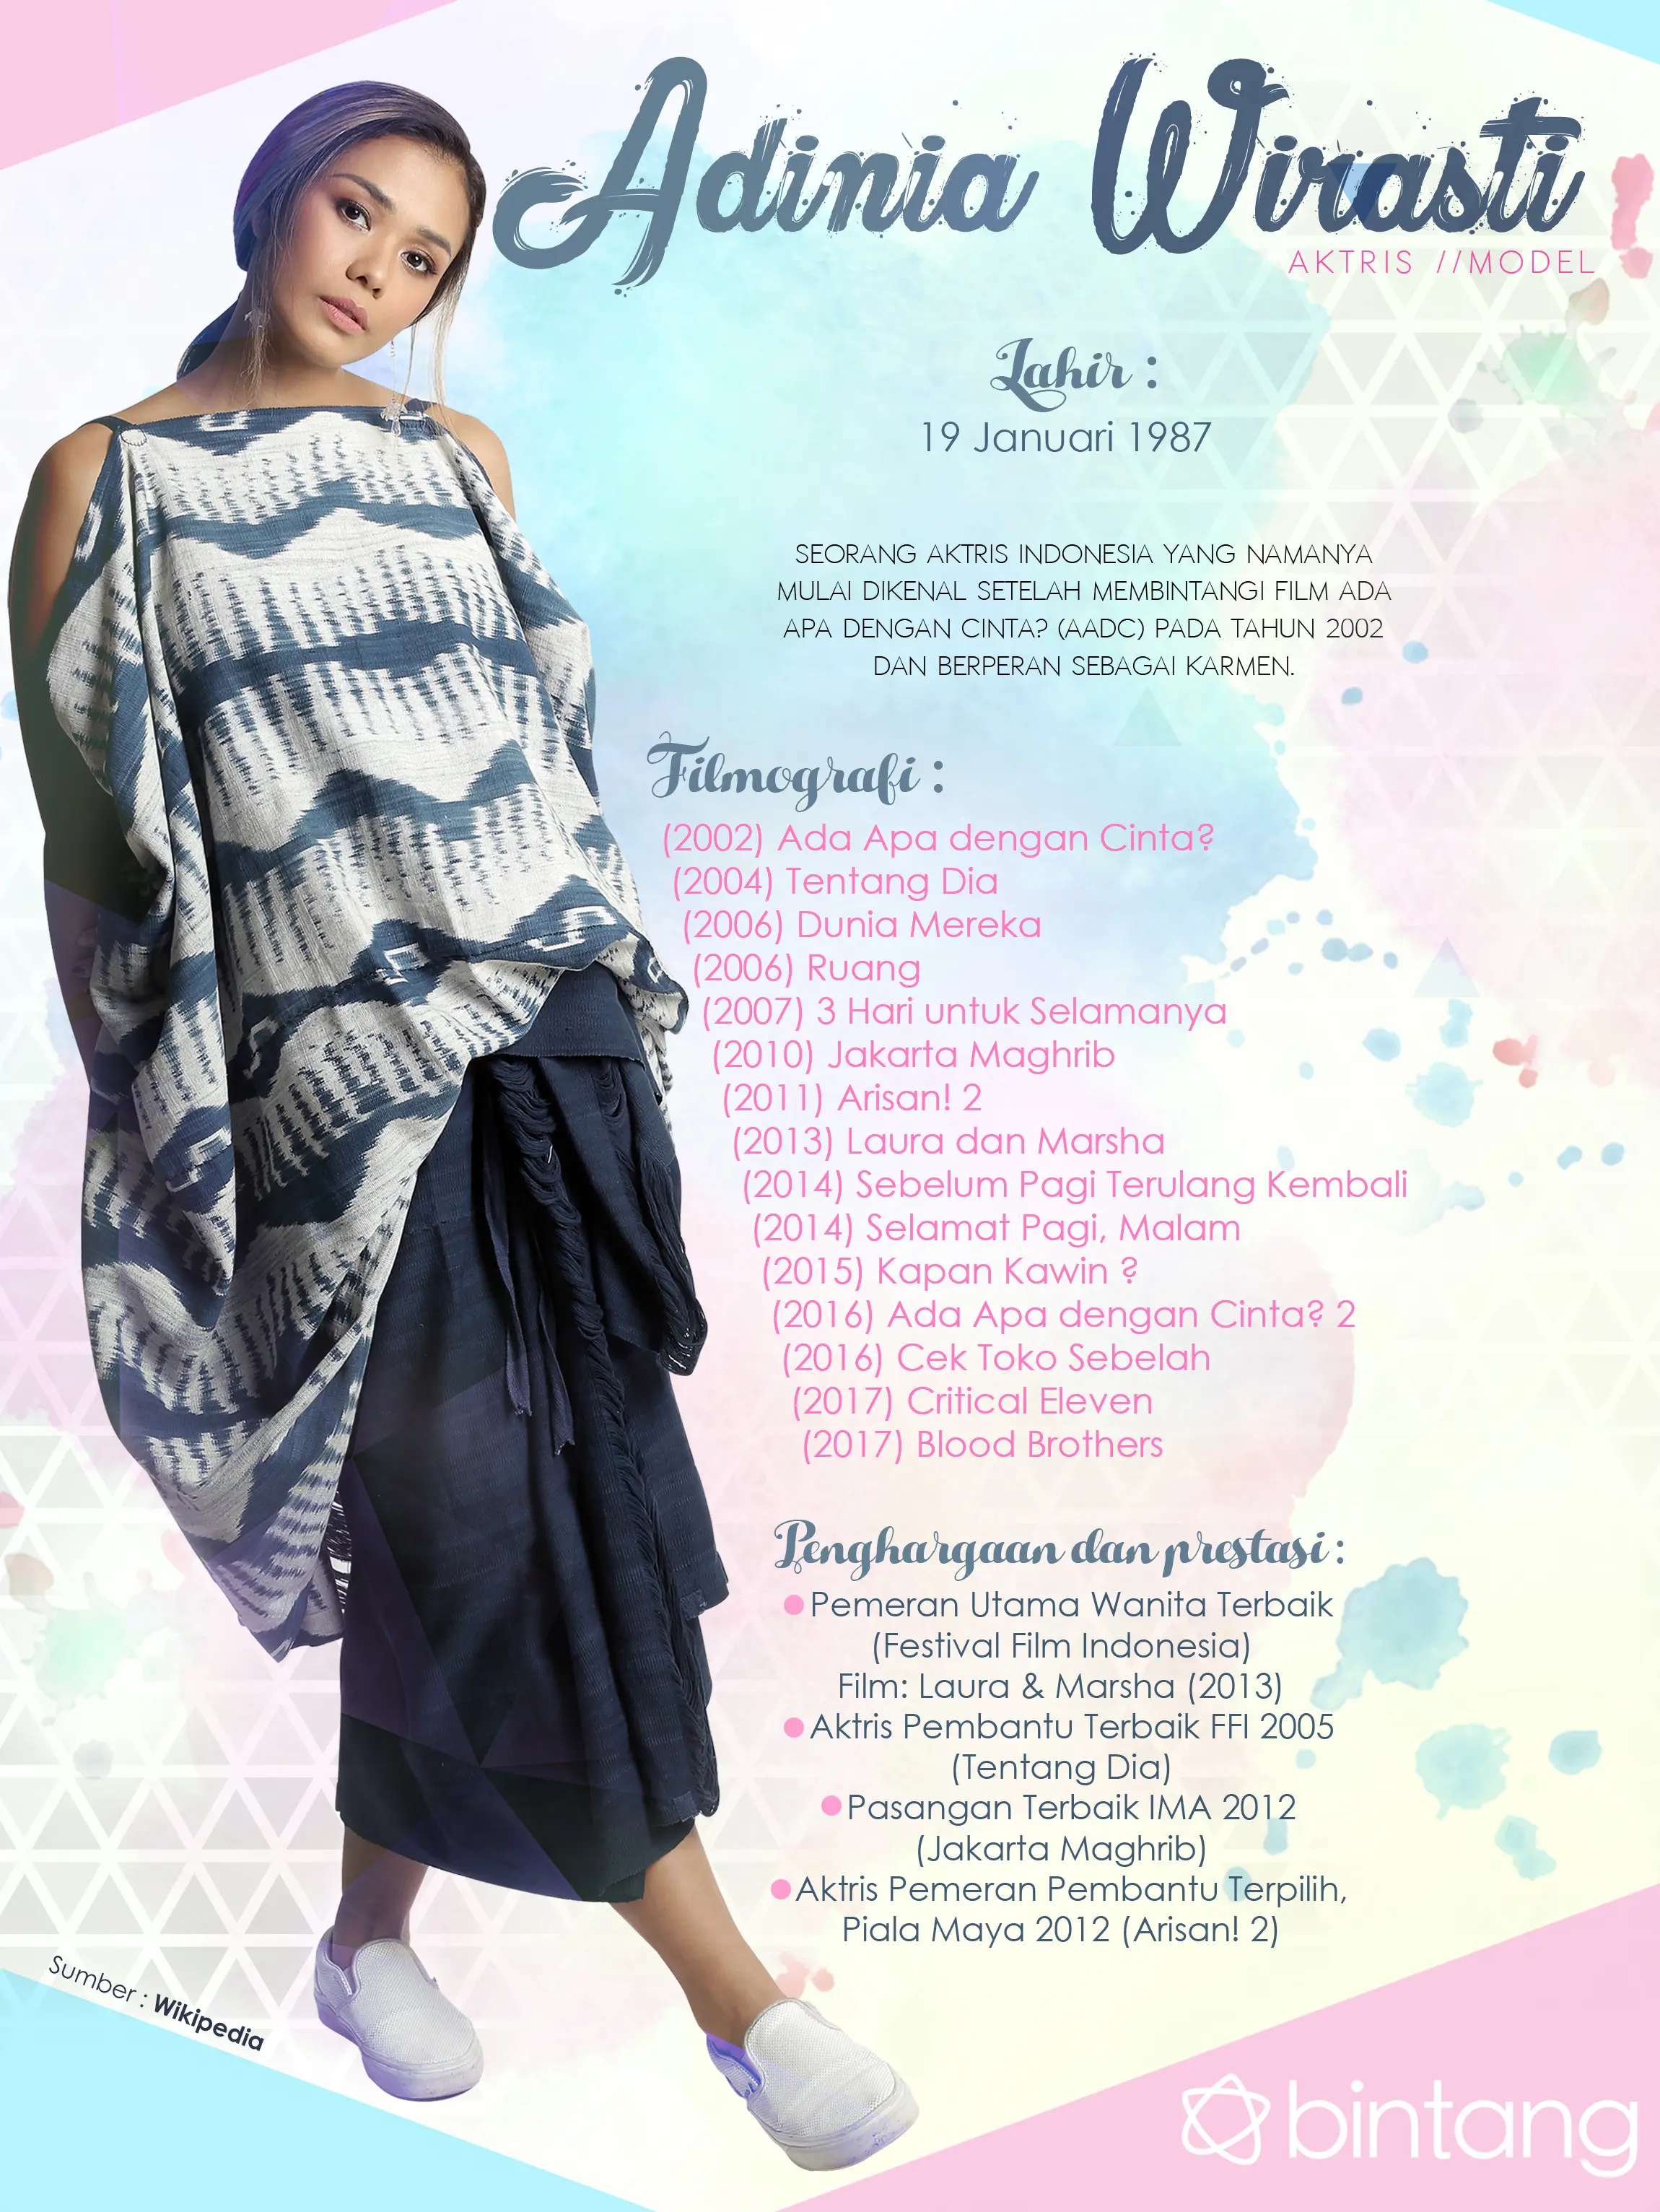 Celeb Bio Adinia Wirasti (Photographer : Galih W. Satria, Stylist : Indah Wulansari, Wardrobe : @sejauhmatamemandang SEJAUH HUMBA Earrings : @edgy_id, MUA: @graciastella, Desain: Nurman Abdul Hakim/Bintang.com)